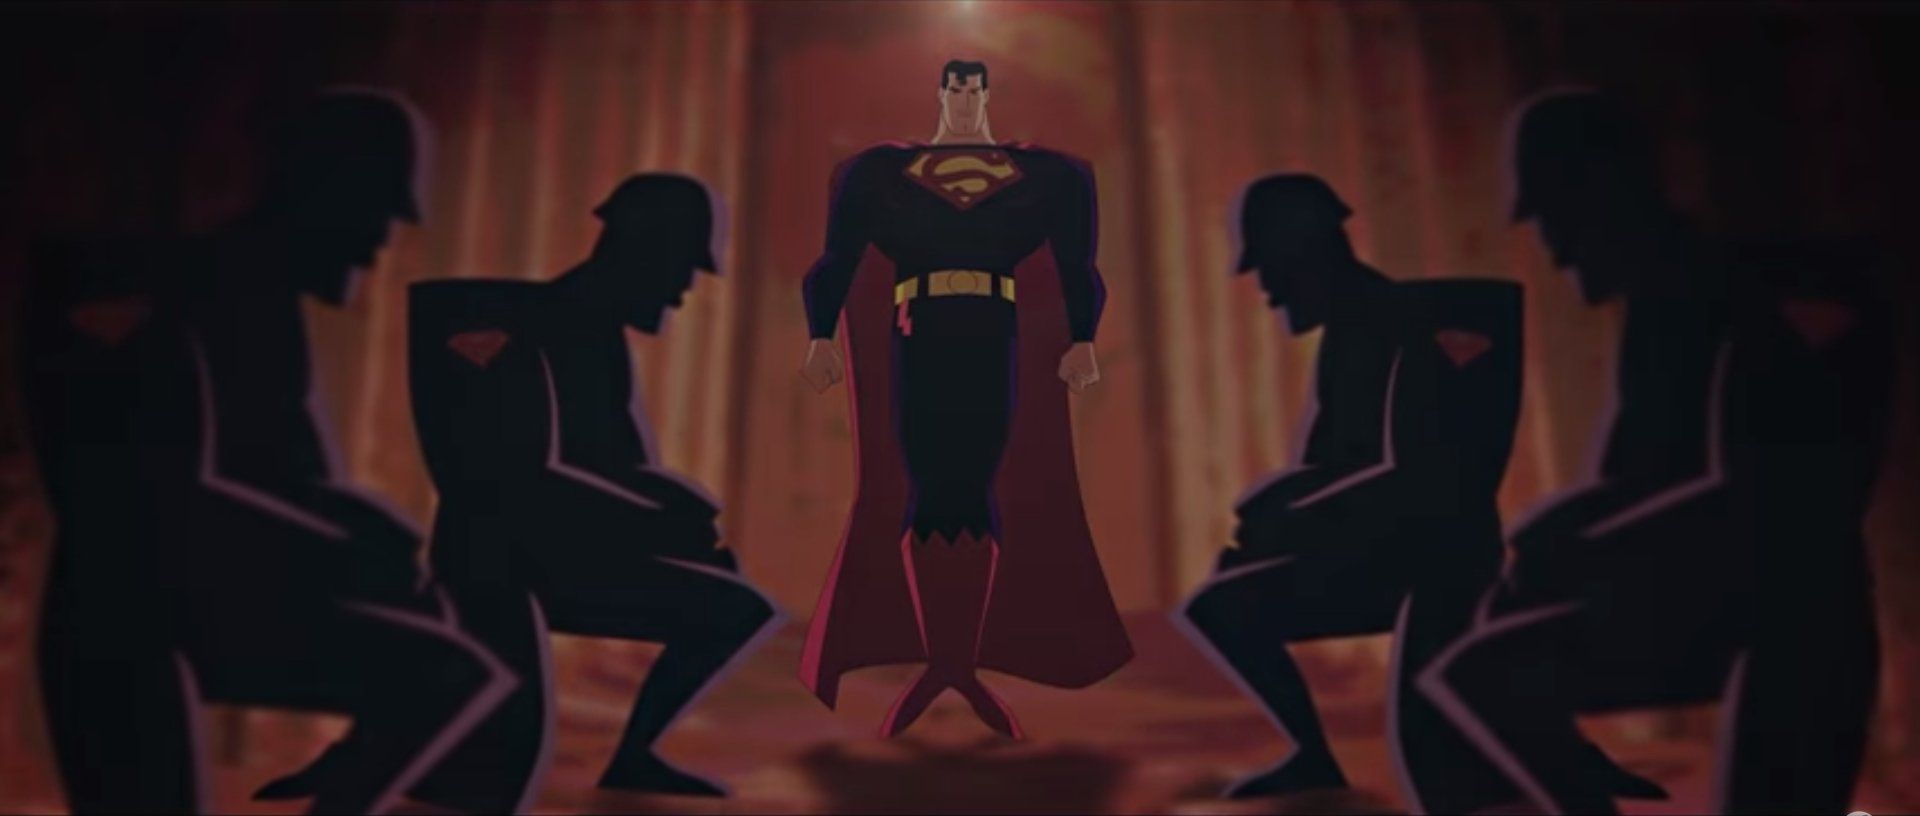 Le trailer de Batman V Superman en version série animée #3